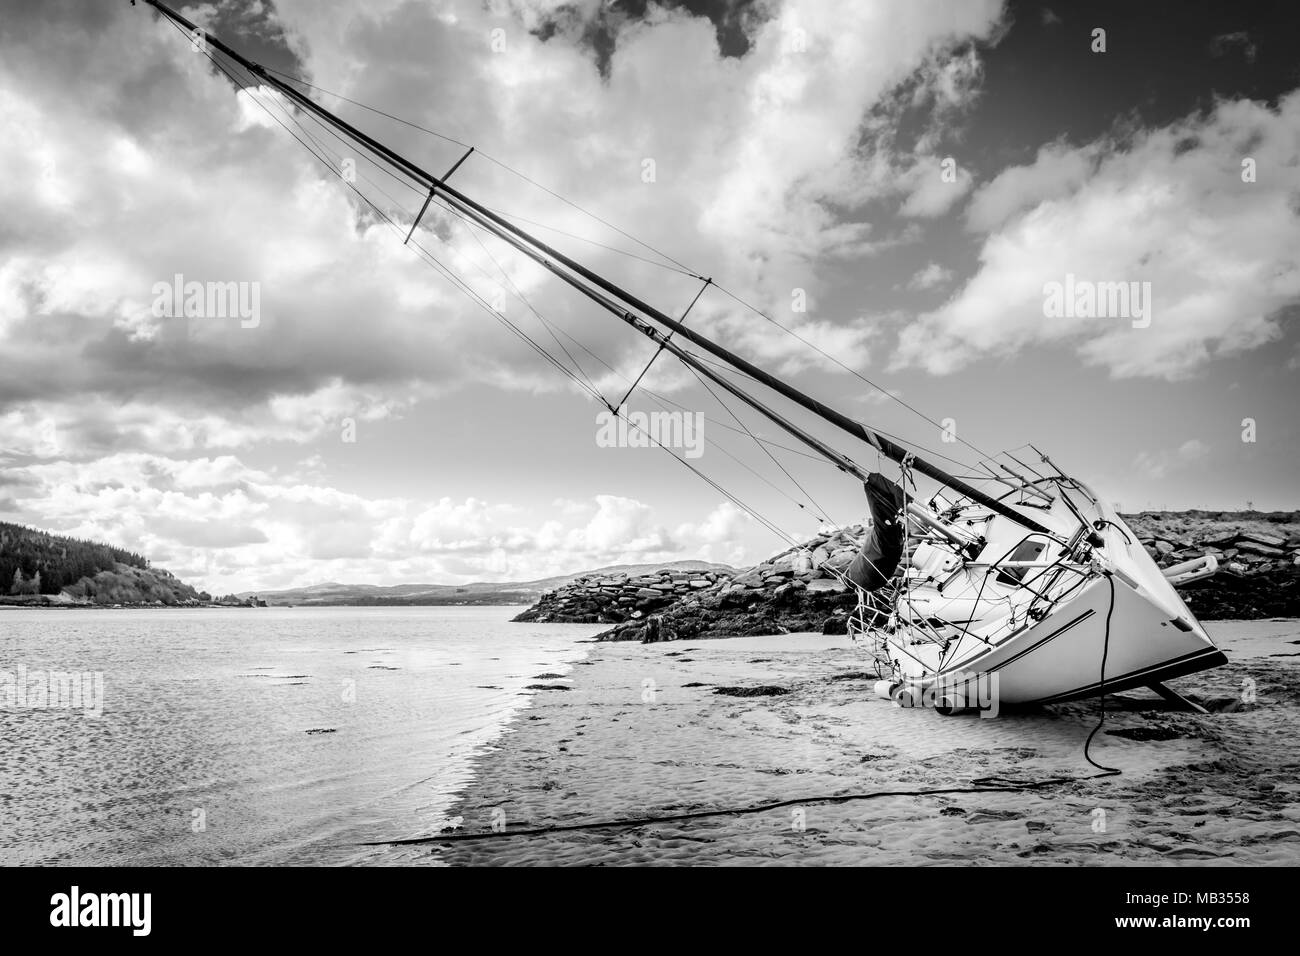 Une photo en noir et blanc d'un voilier hors de l'eau à marée basse. Banque D'Images